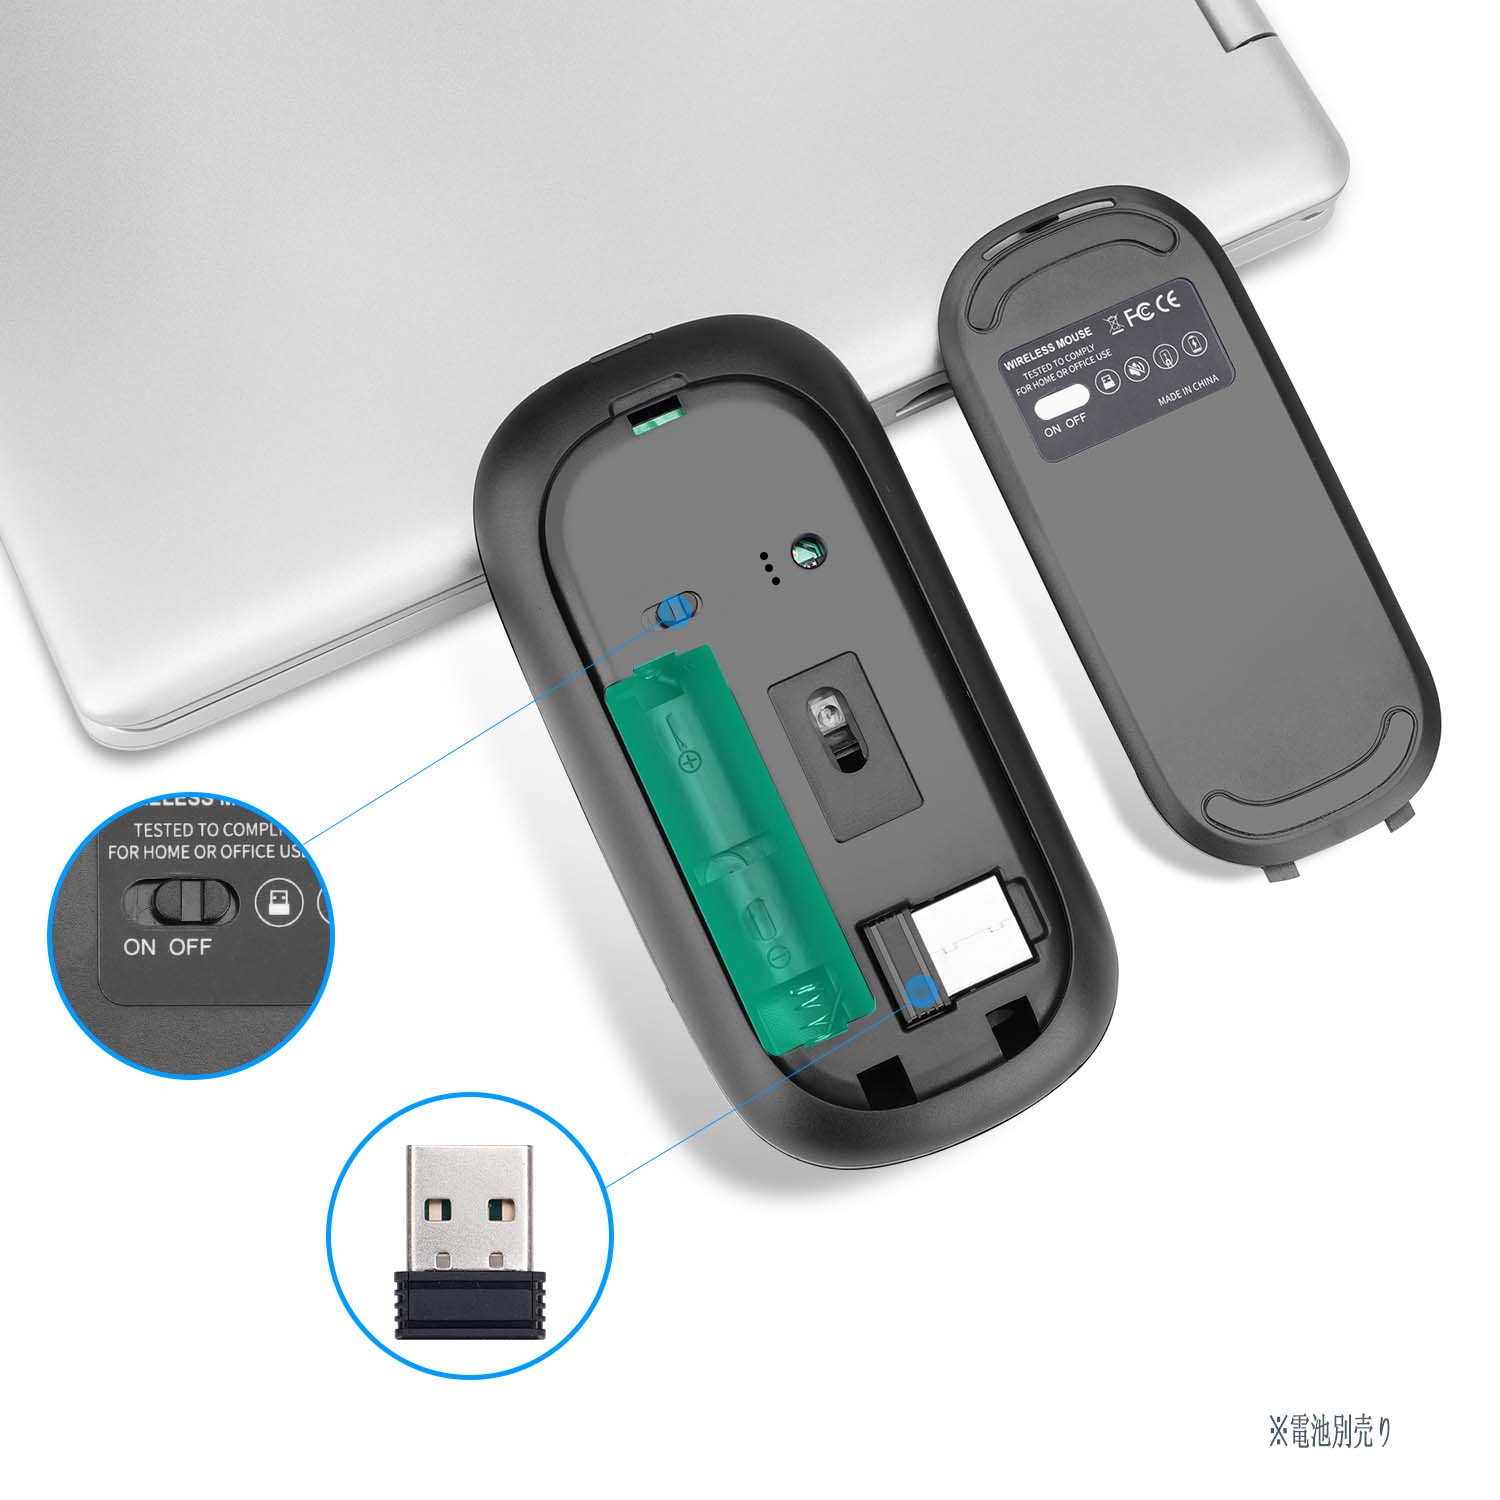 ワイヤレスマウス  マウス 無線マウス 省エネルギー 高精度 軽量 持ち運び便利 オフィス 旅行 出張 電池式 コンパクト おしゃれ 小型 microUSB 薄い 超特価